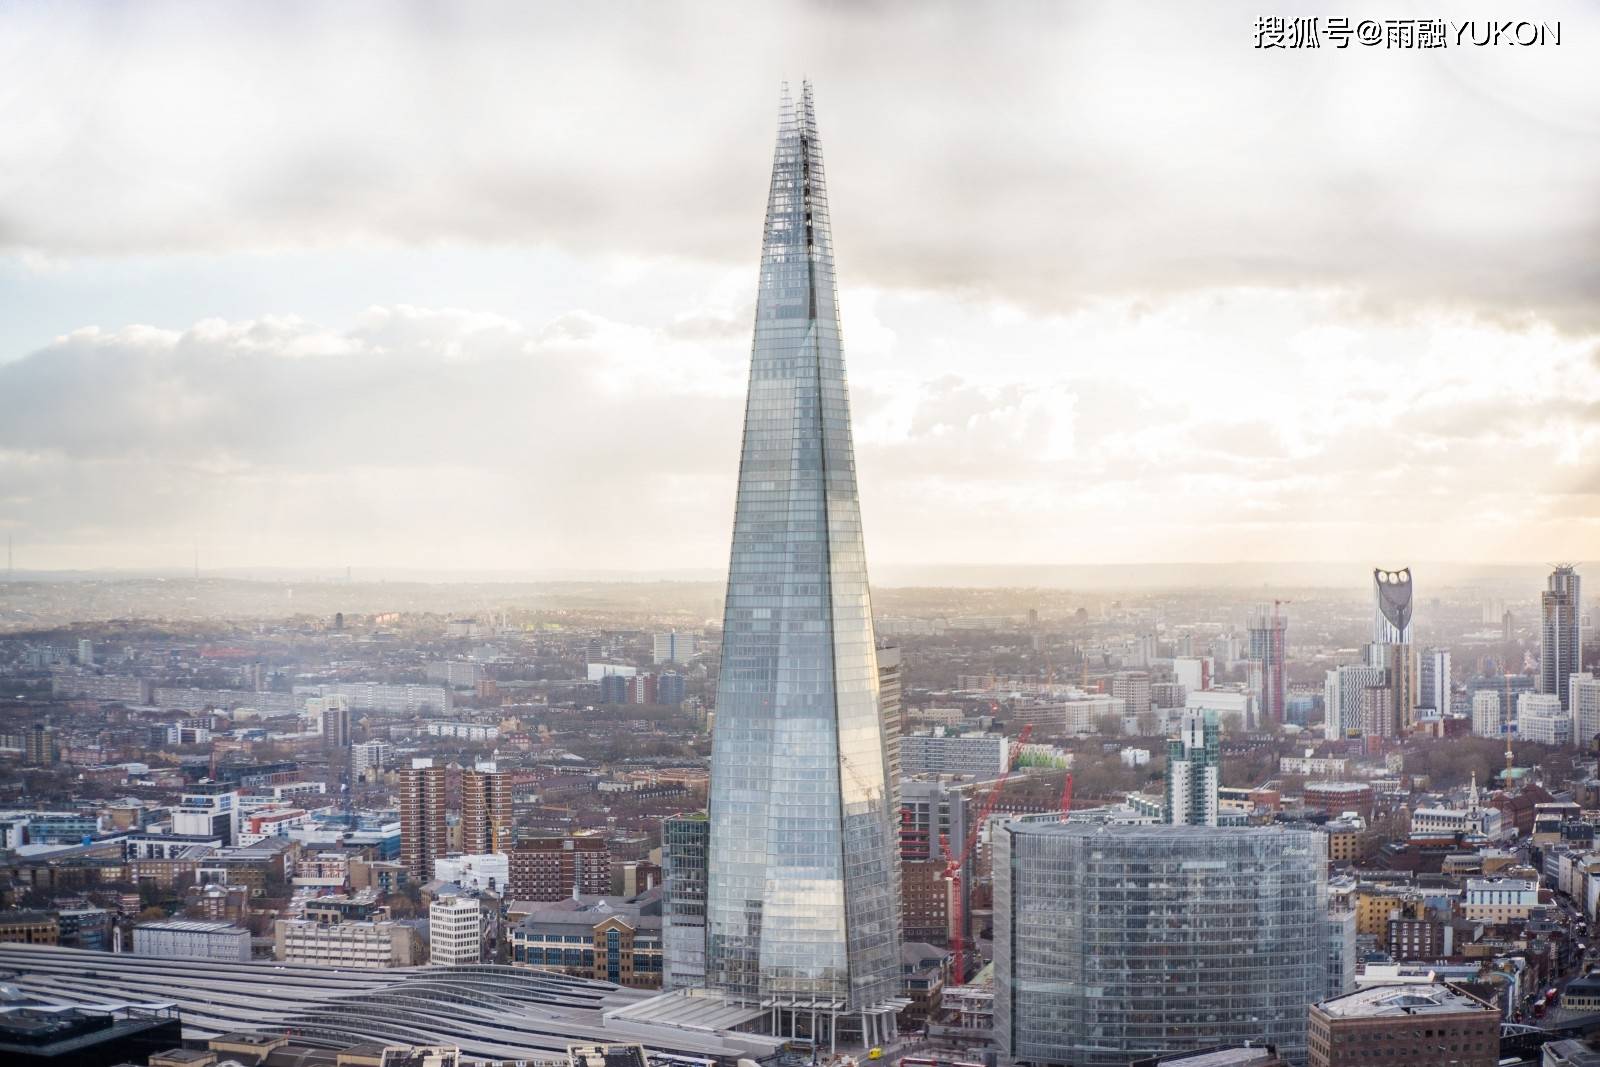 原创英国第一高楼:309.6米高耗资超40亿,95%却被一个中东小国所拥有